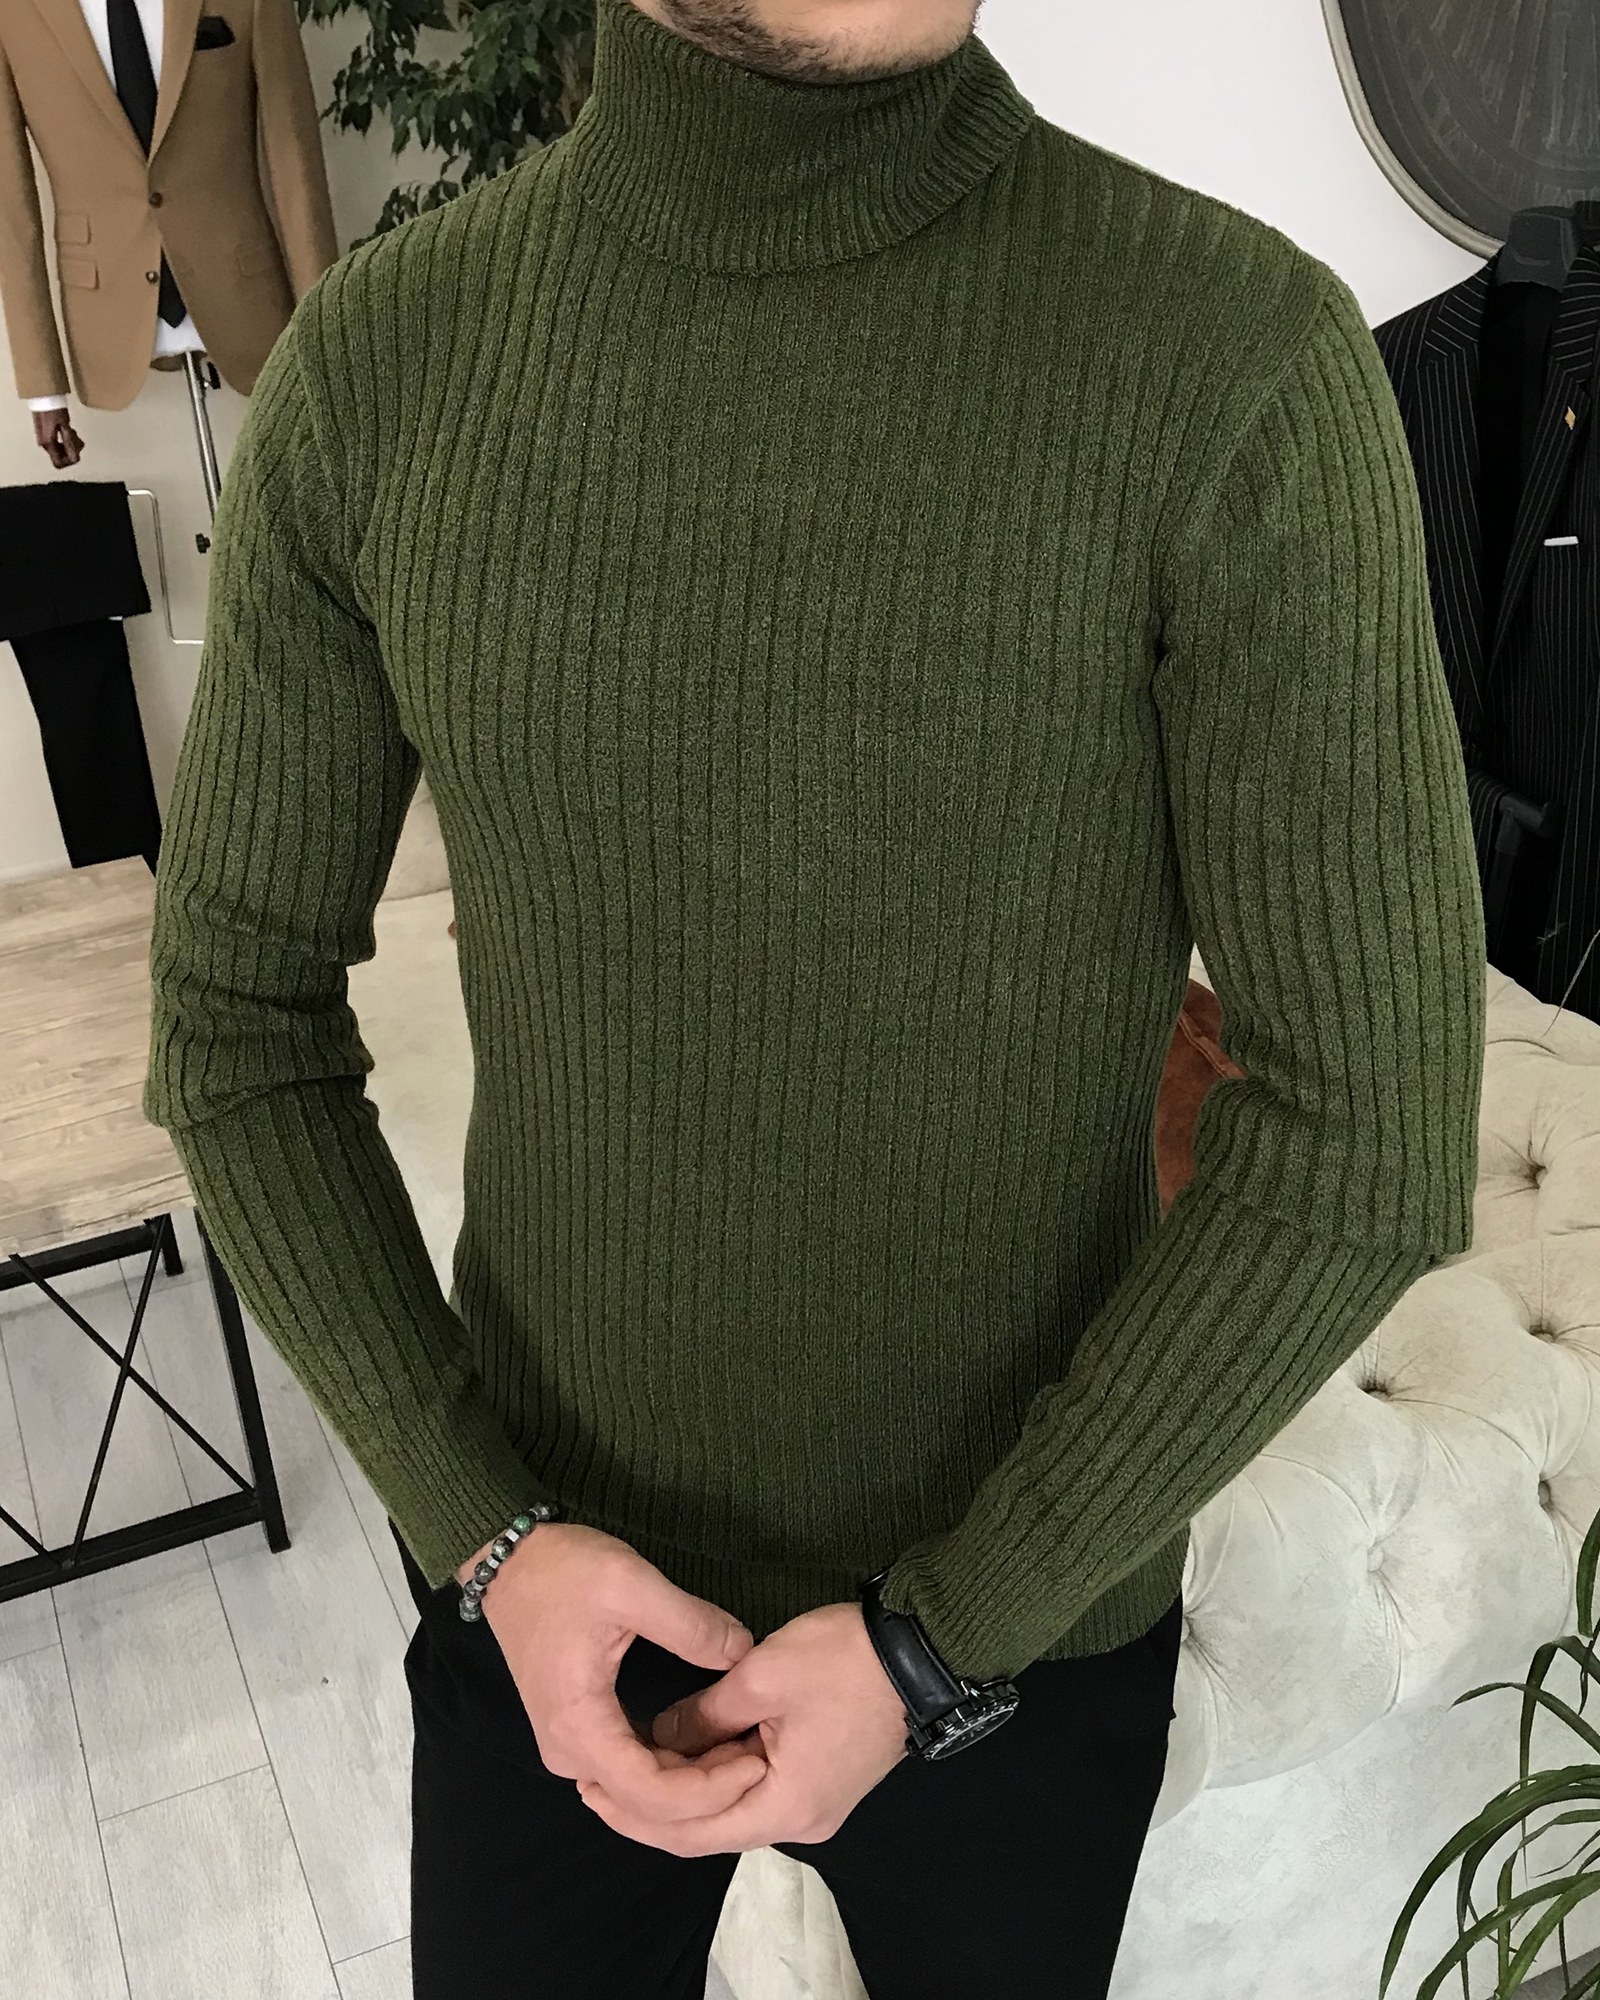 Italian style slim fit men's turtleneck knitwear sweater Green T7960